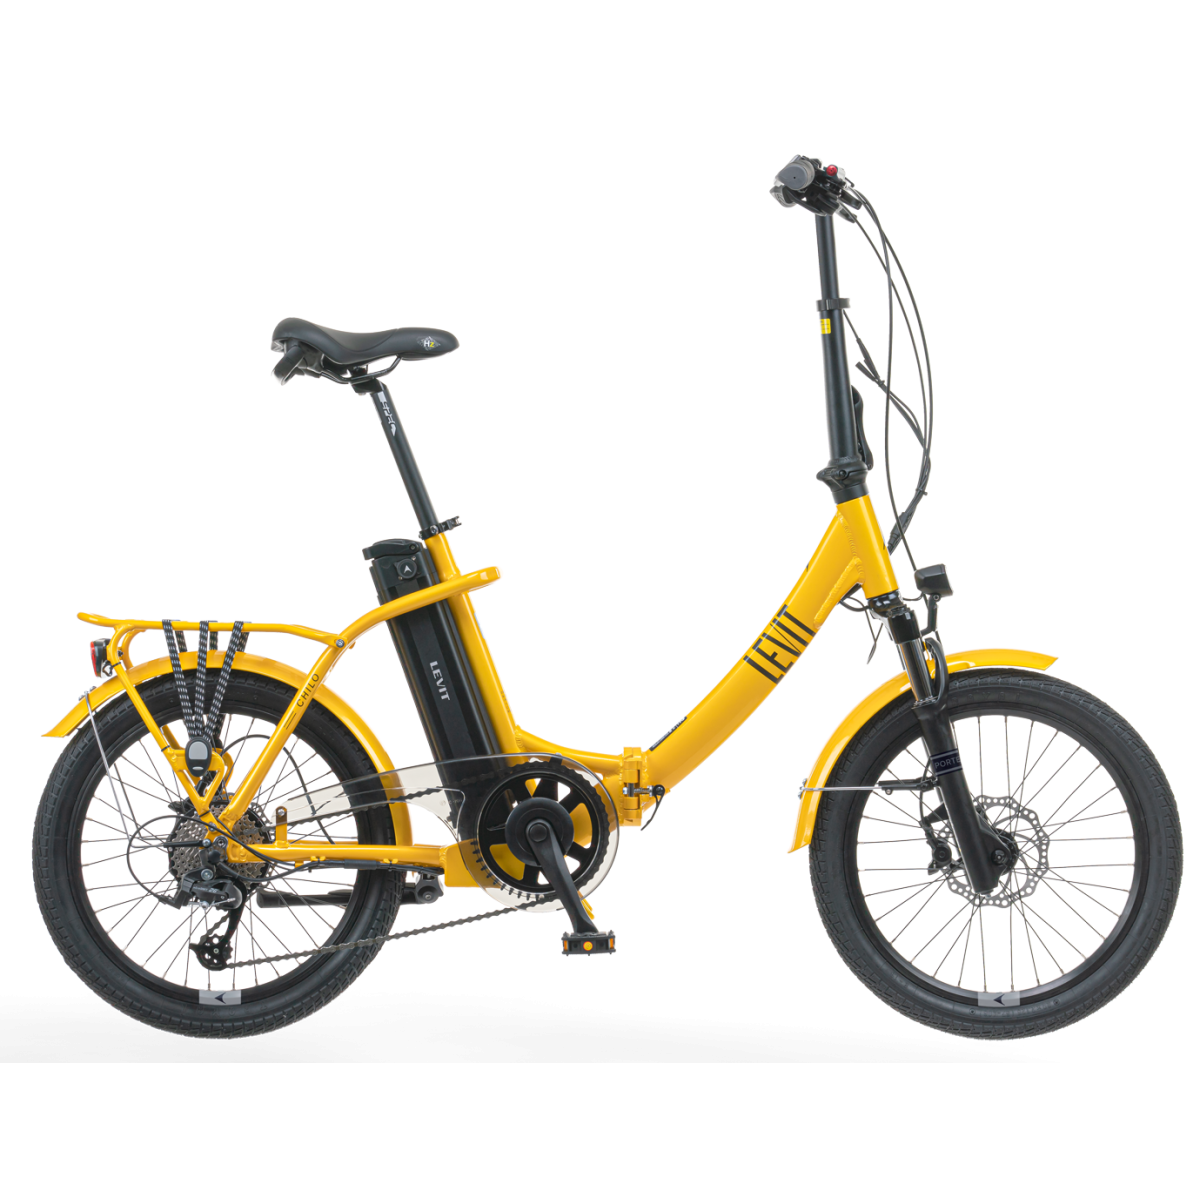 LEVIT eFOLDING CHILO 1 468wh 17.4" electro folding bicycle - yellow